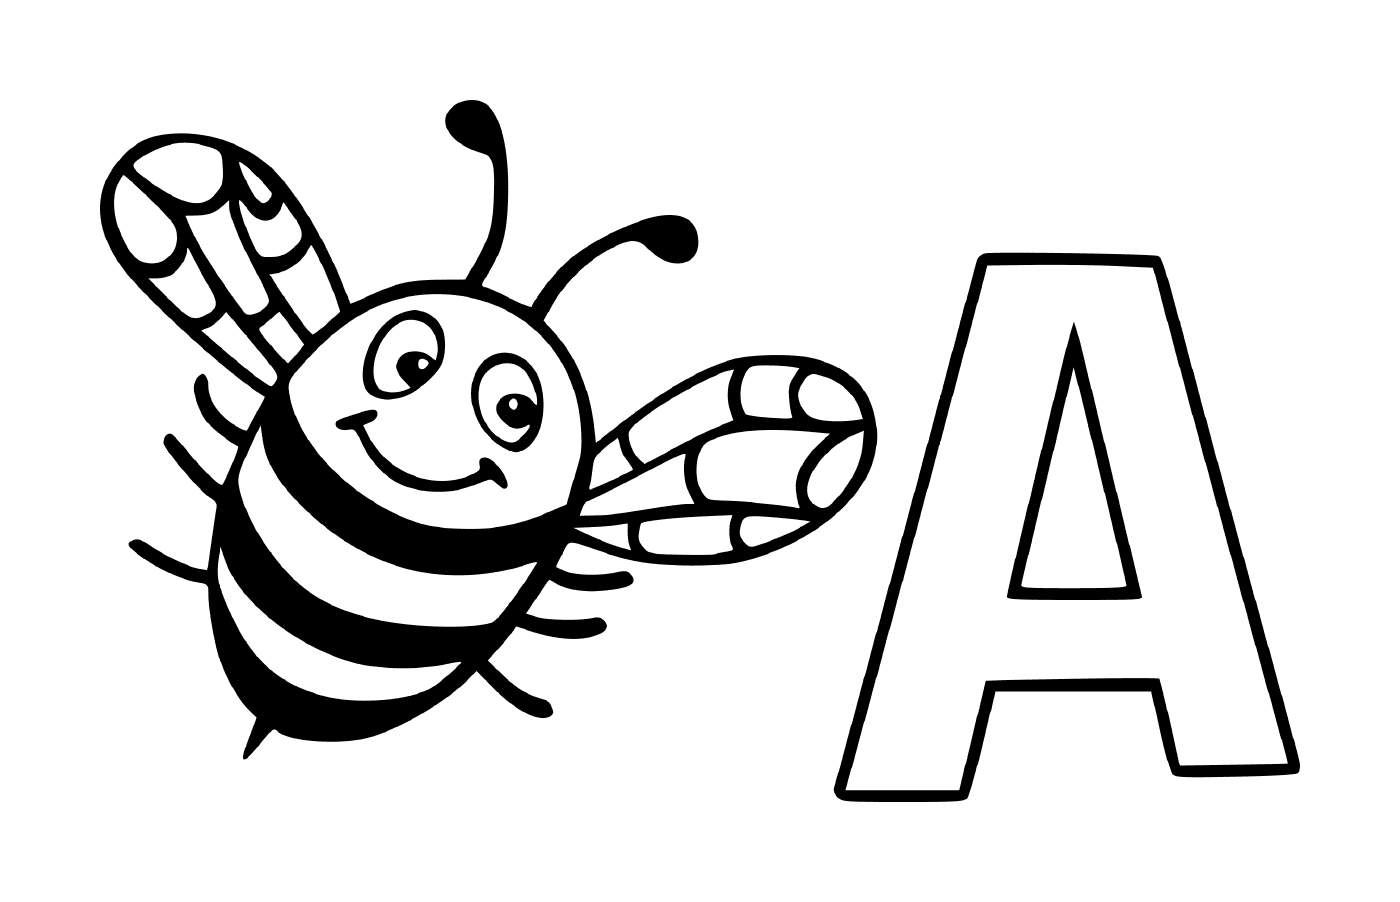  Buchstabe A mit einer Biene 